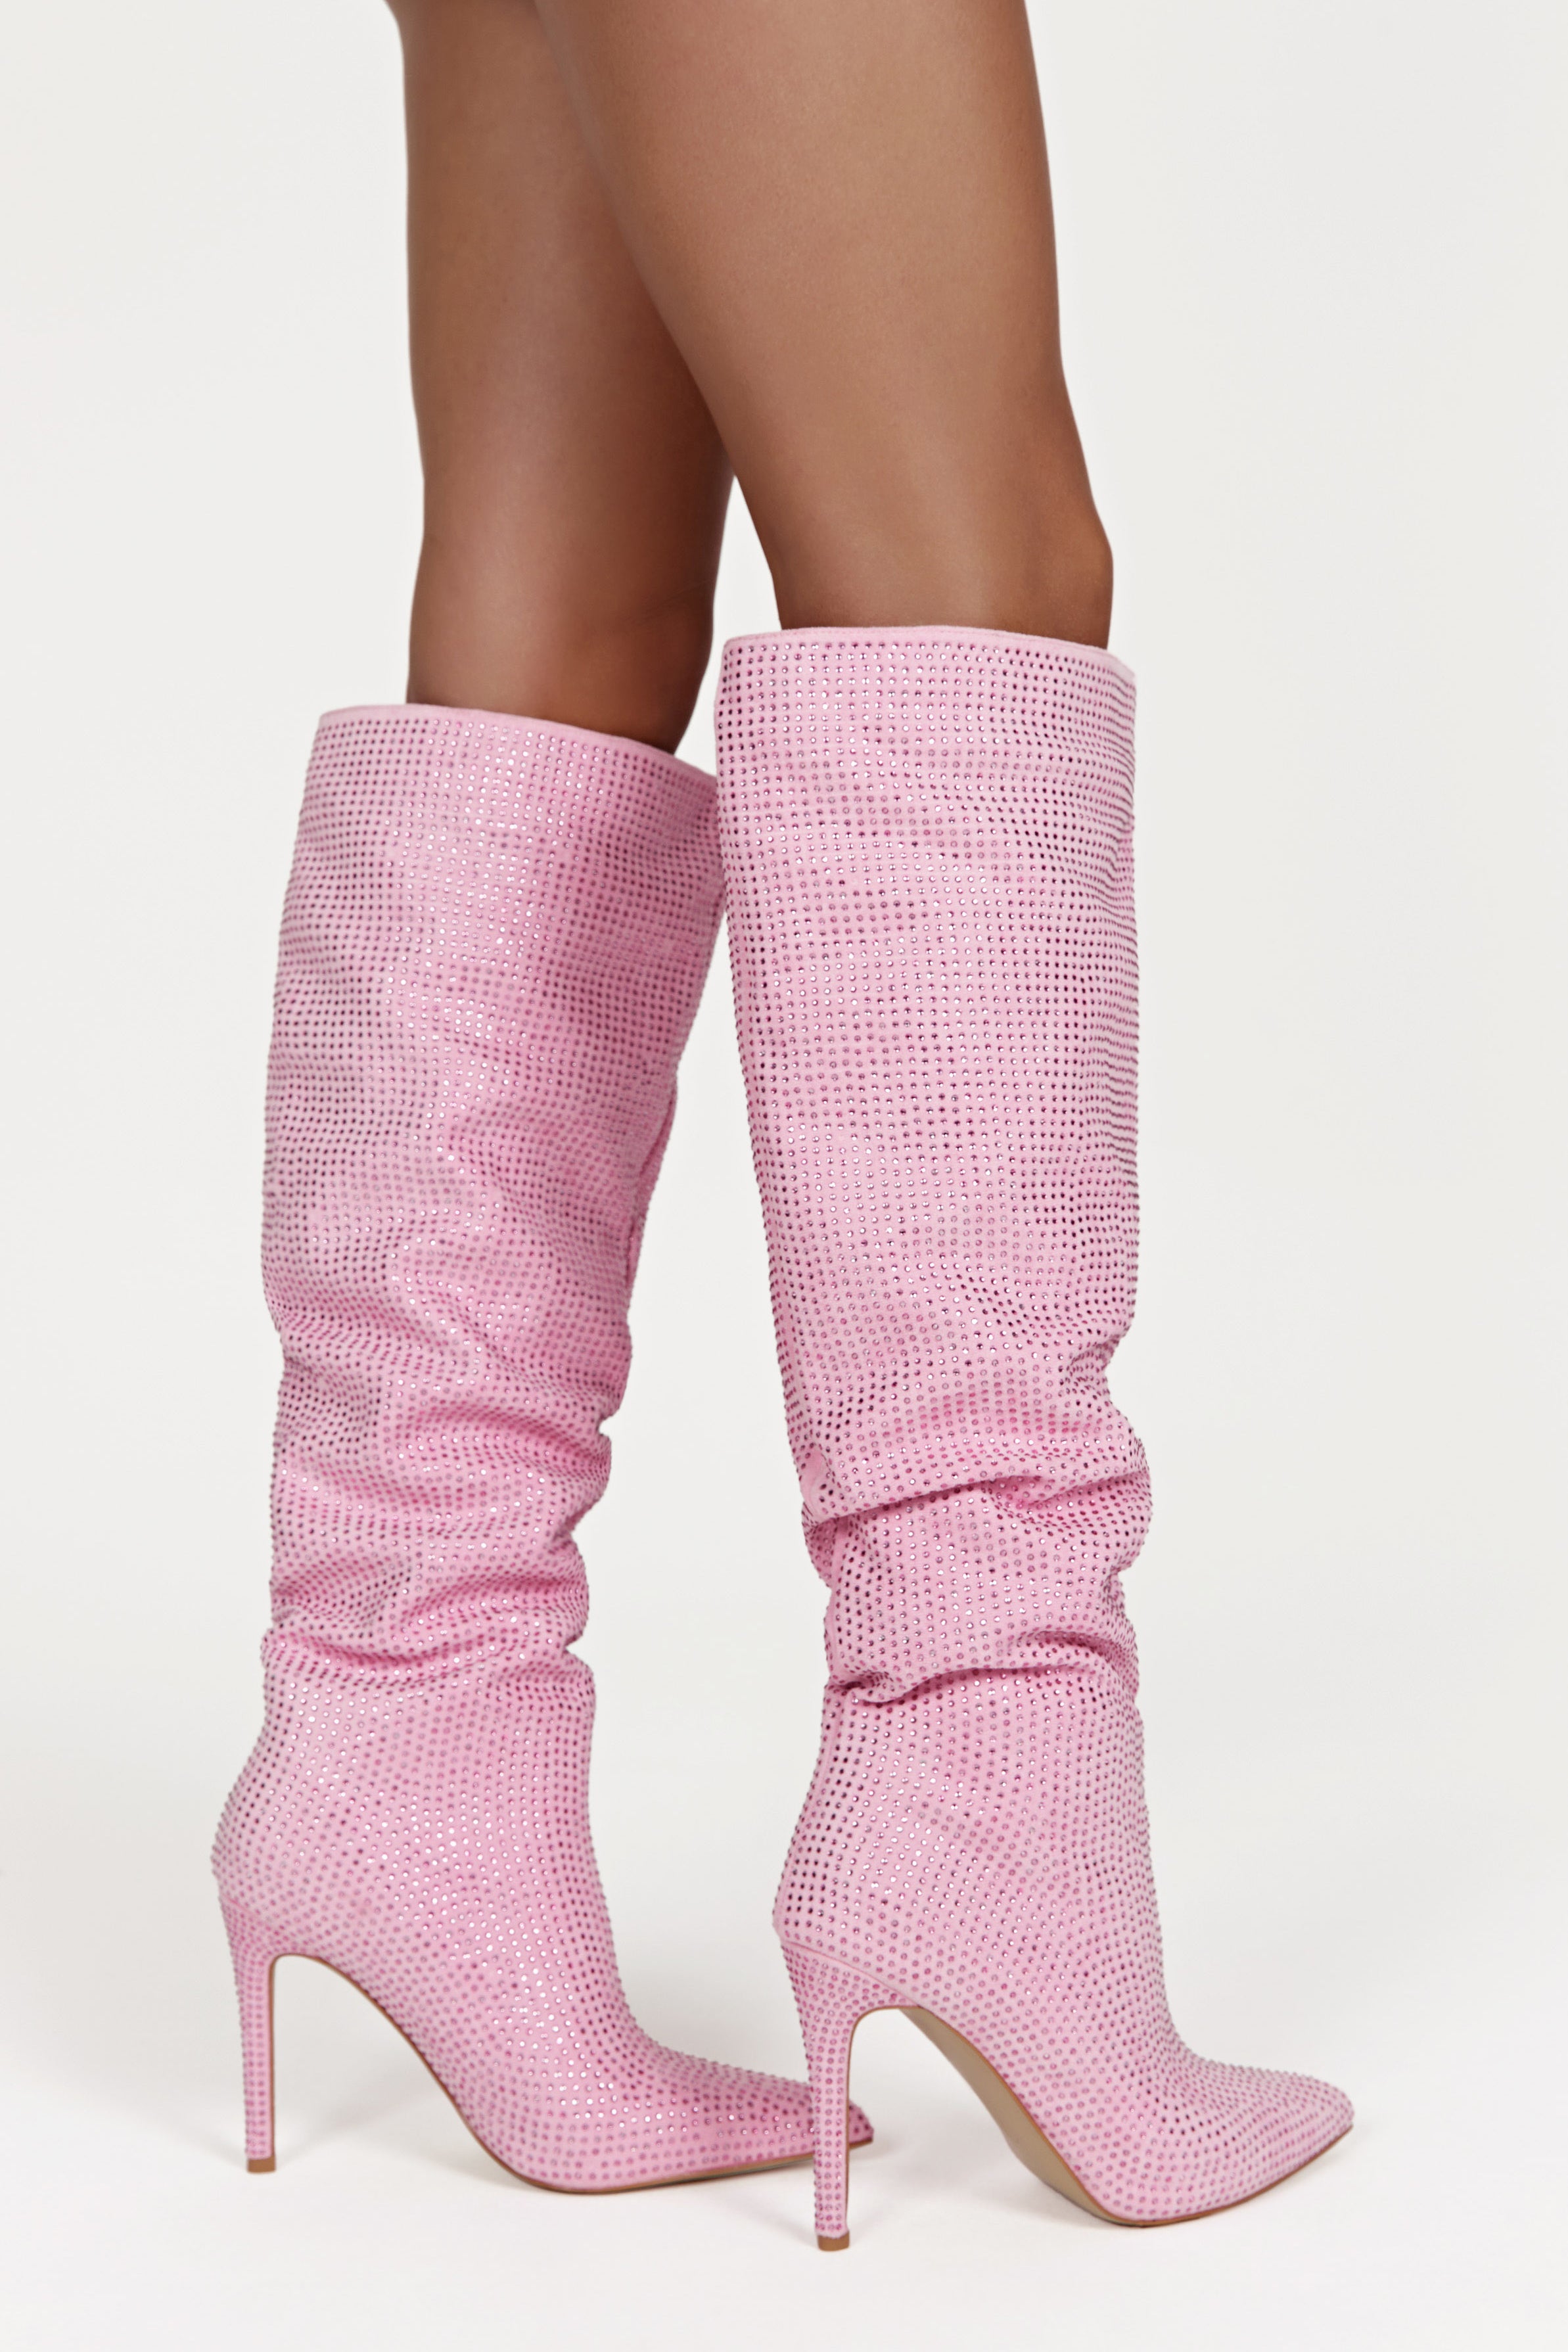 Jenner Diamante High Heel Boot – Blush Pink